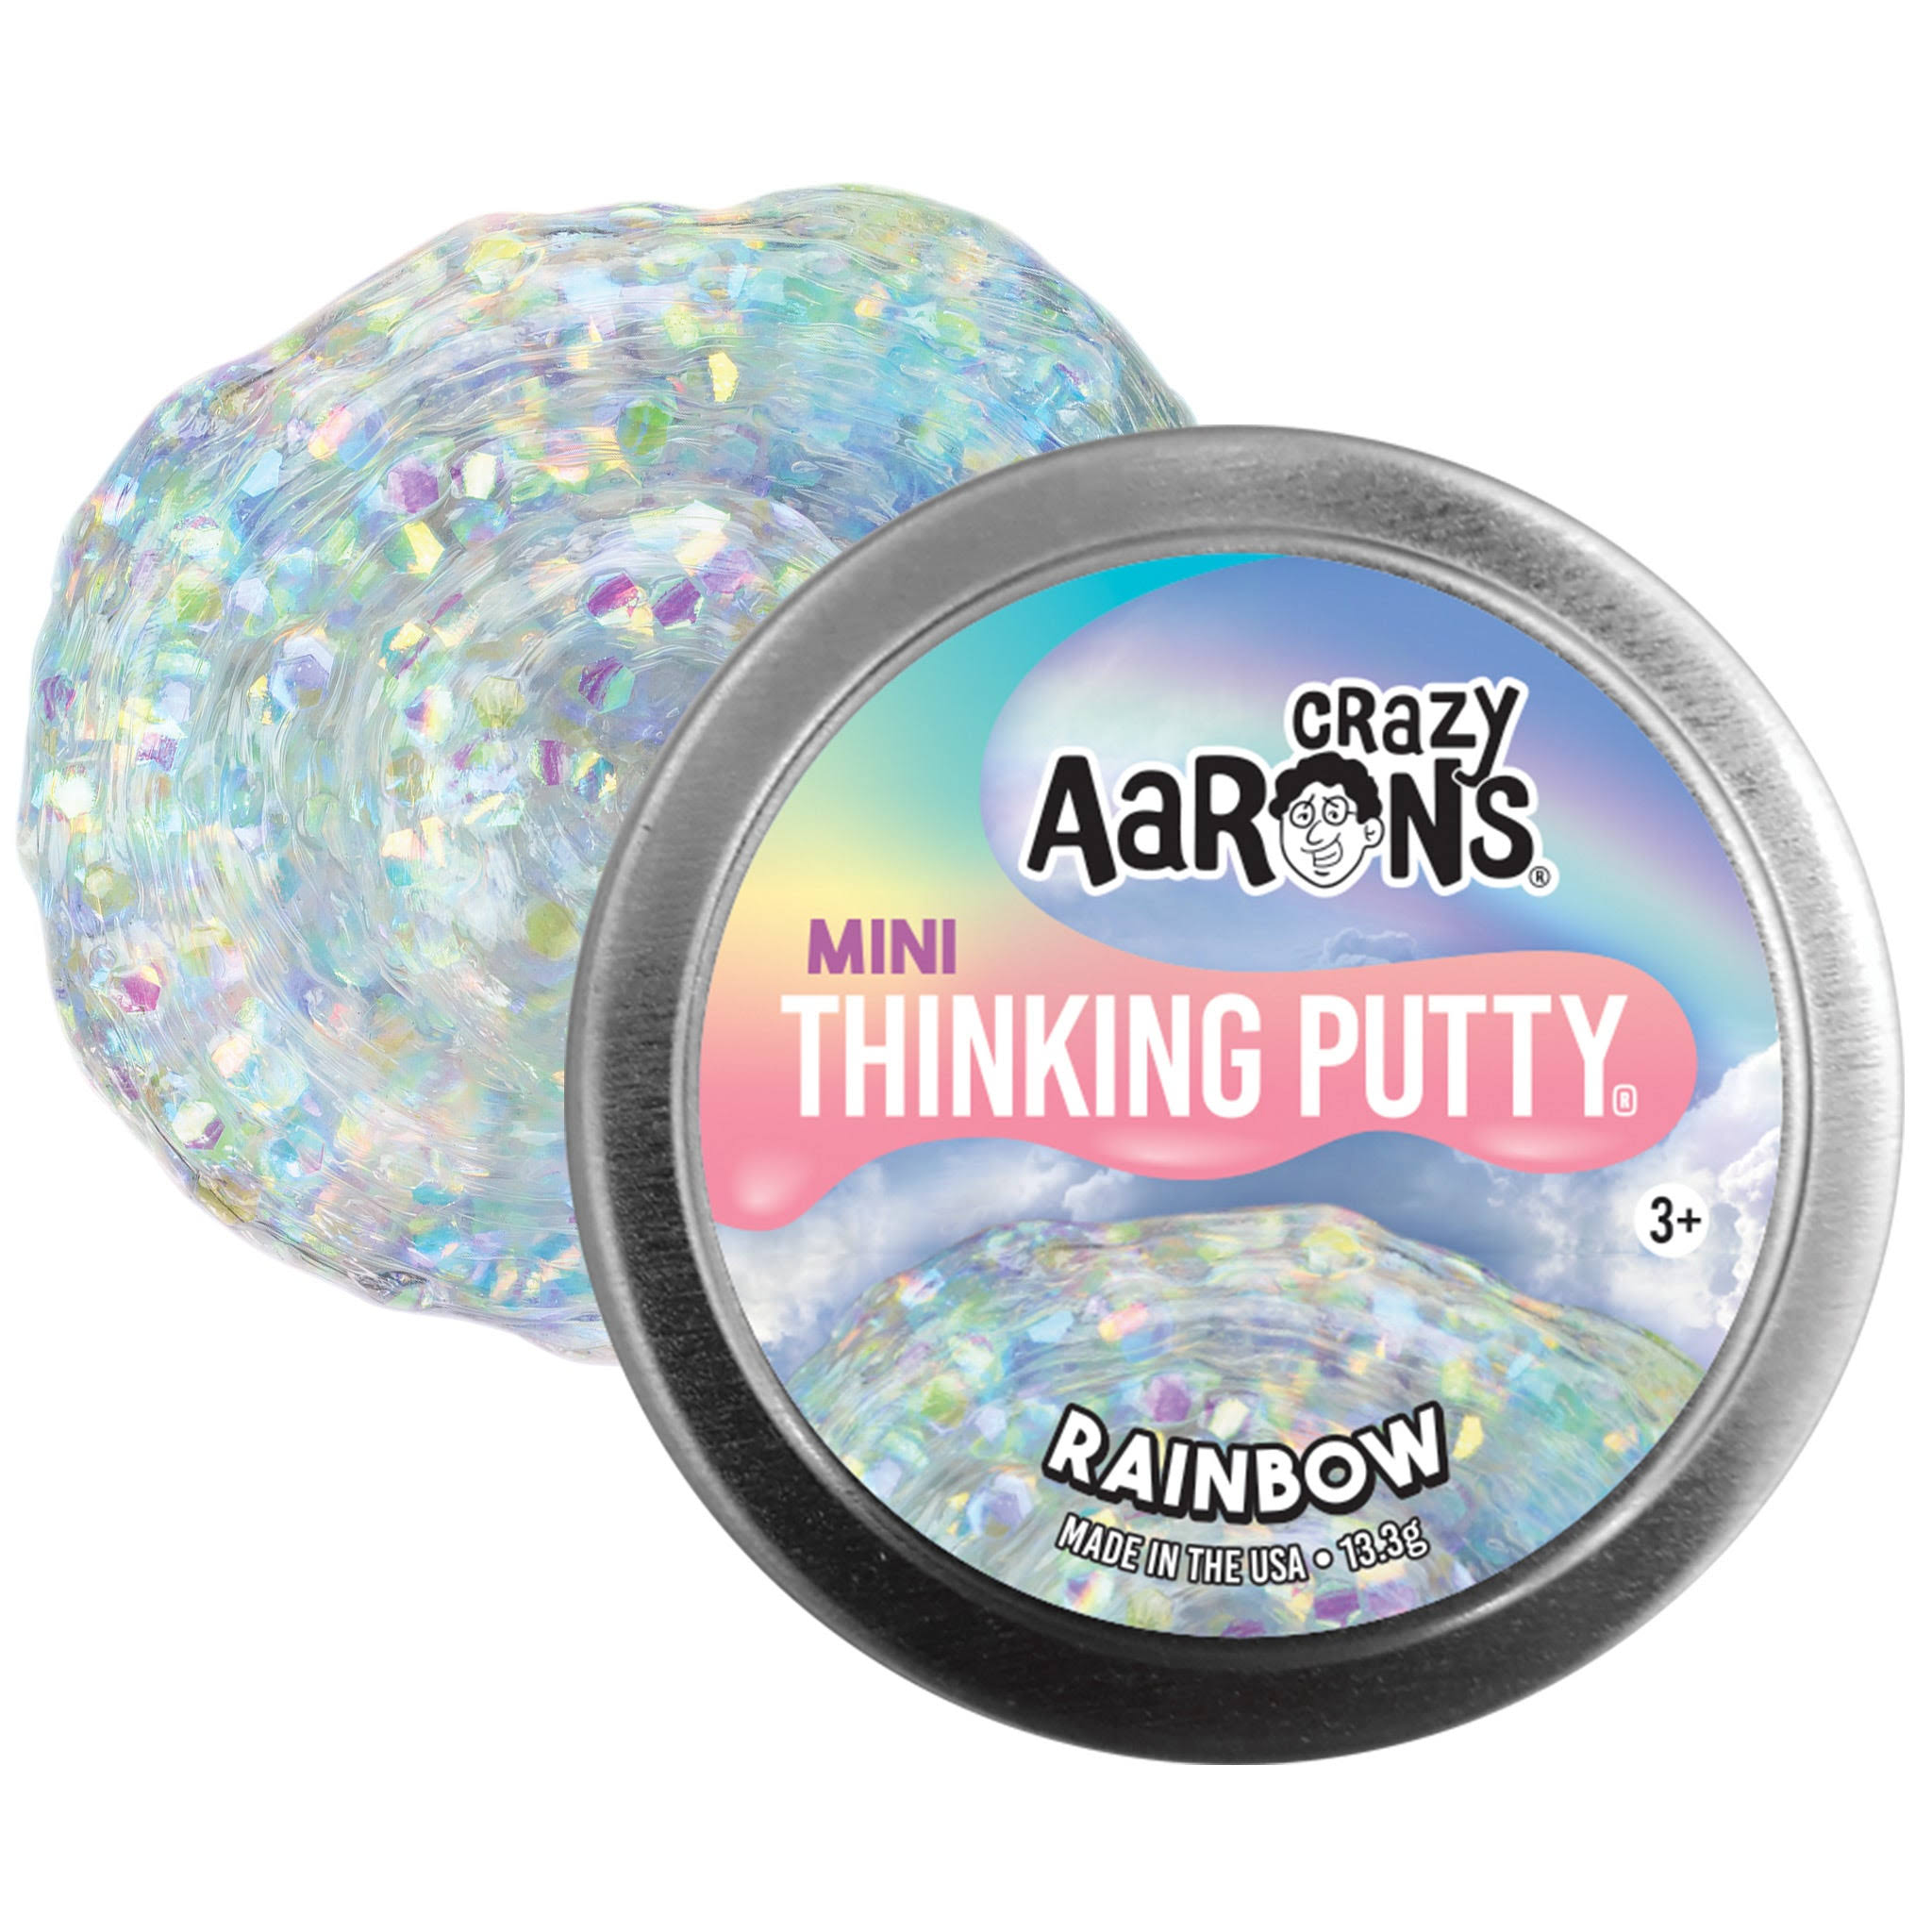 Crazy Aaron's Mini Thinking Putty Rainbow